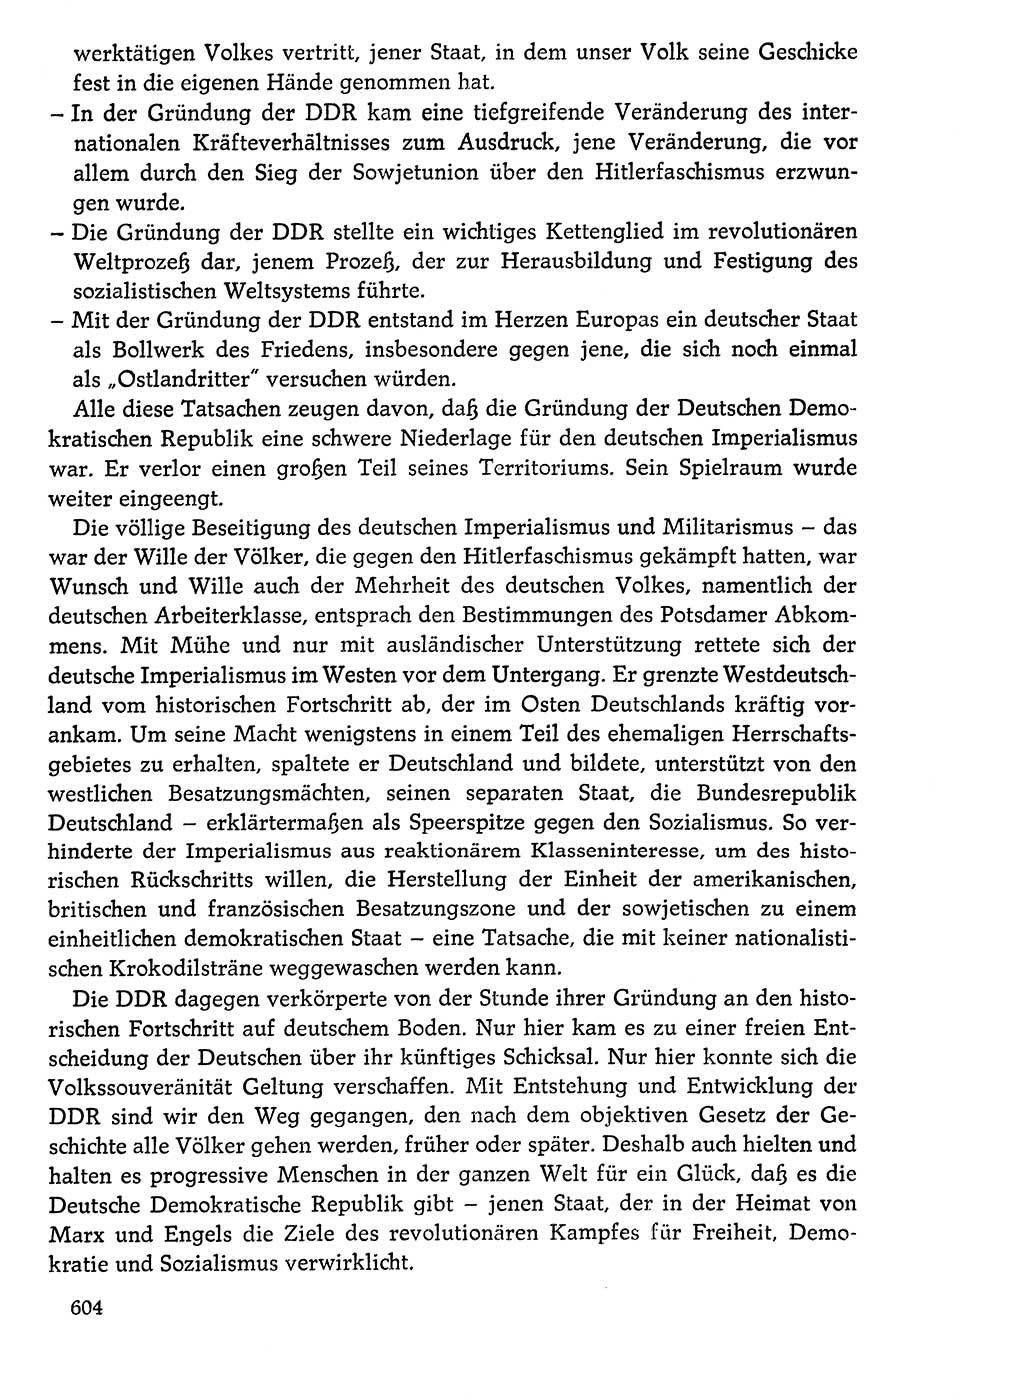 Dokumente der Sozialistischen Einheitspartei Deutschlands (SED) [Deutsche Demokratische Republik (DDR)] 1976-1977, Seite 604 (Dok. SED DDR 1976-1977, S. 604)